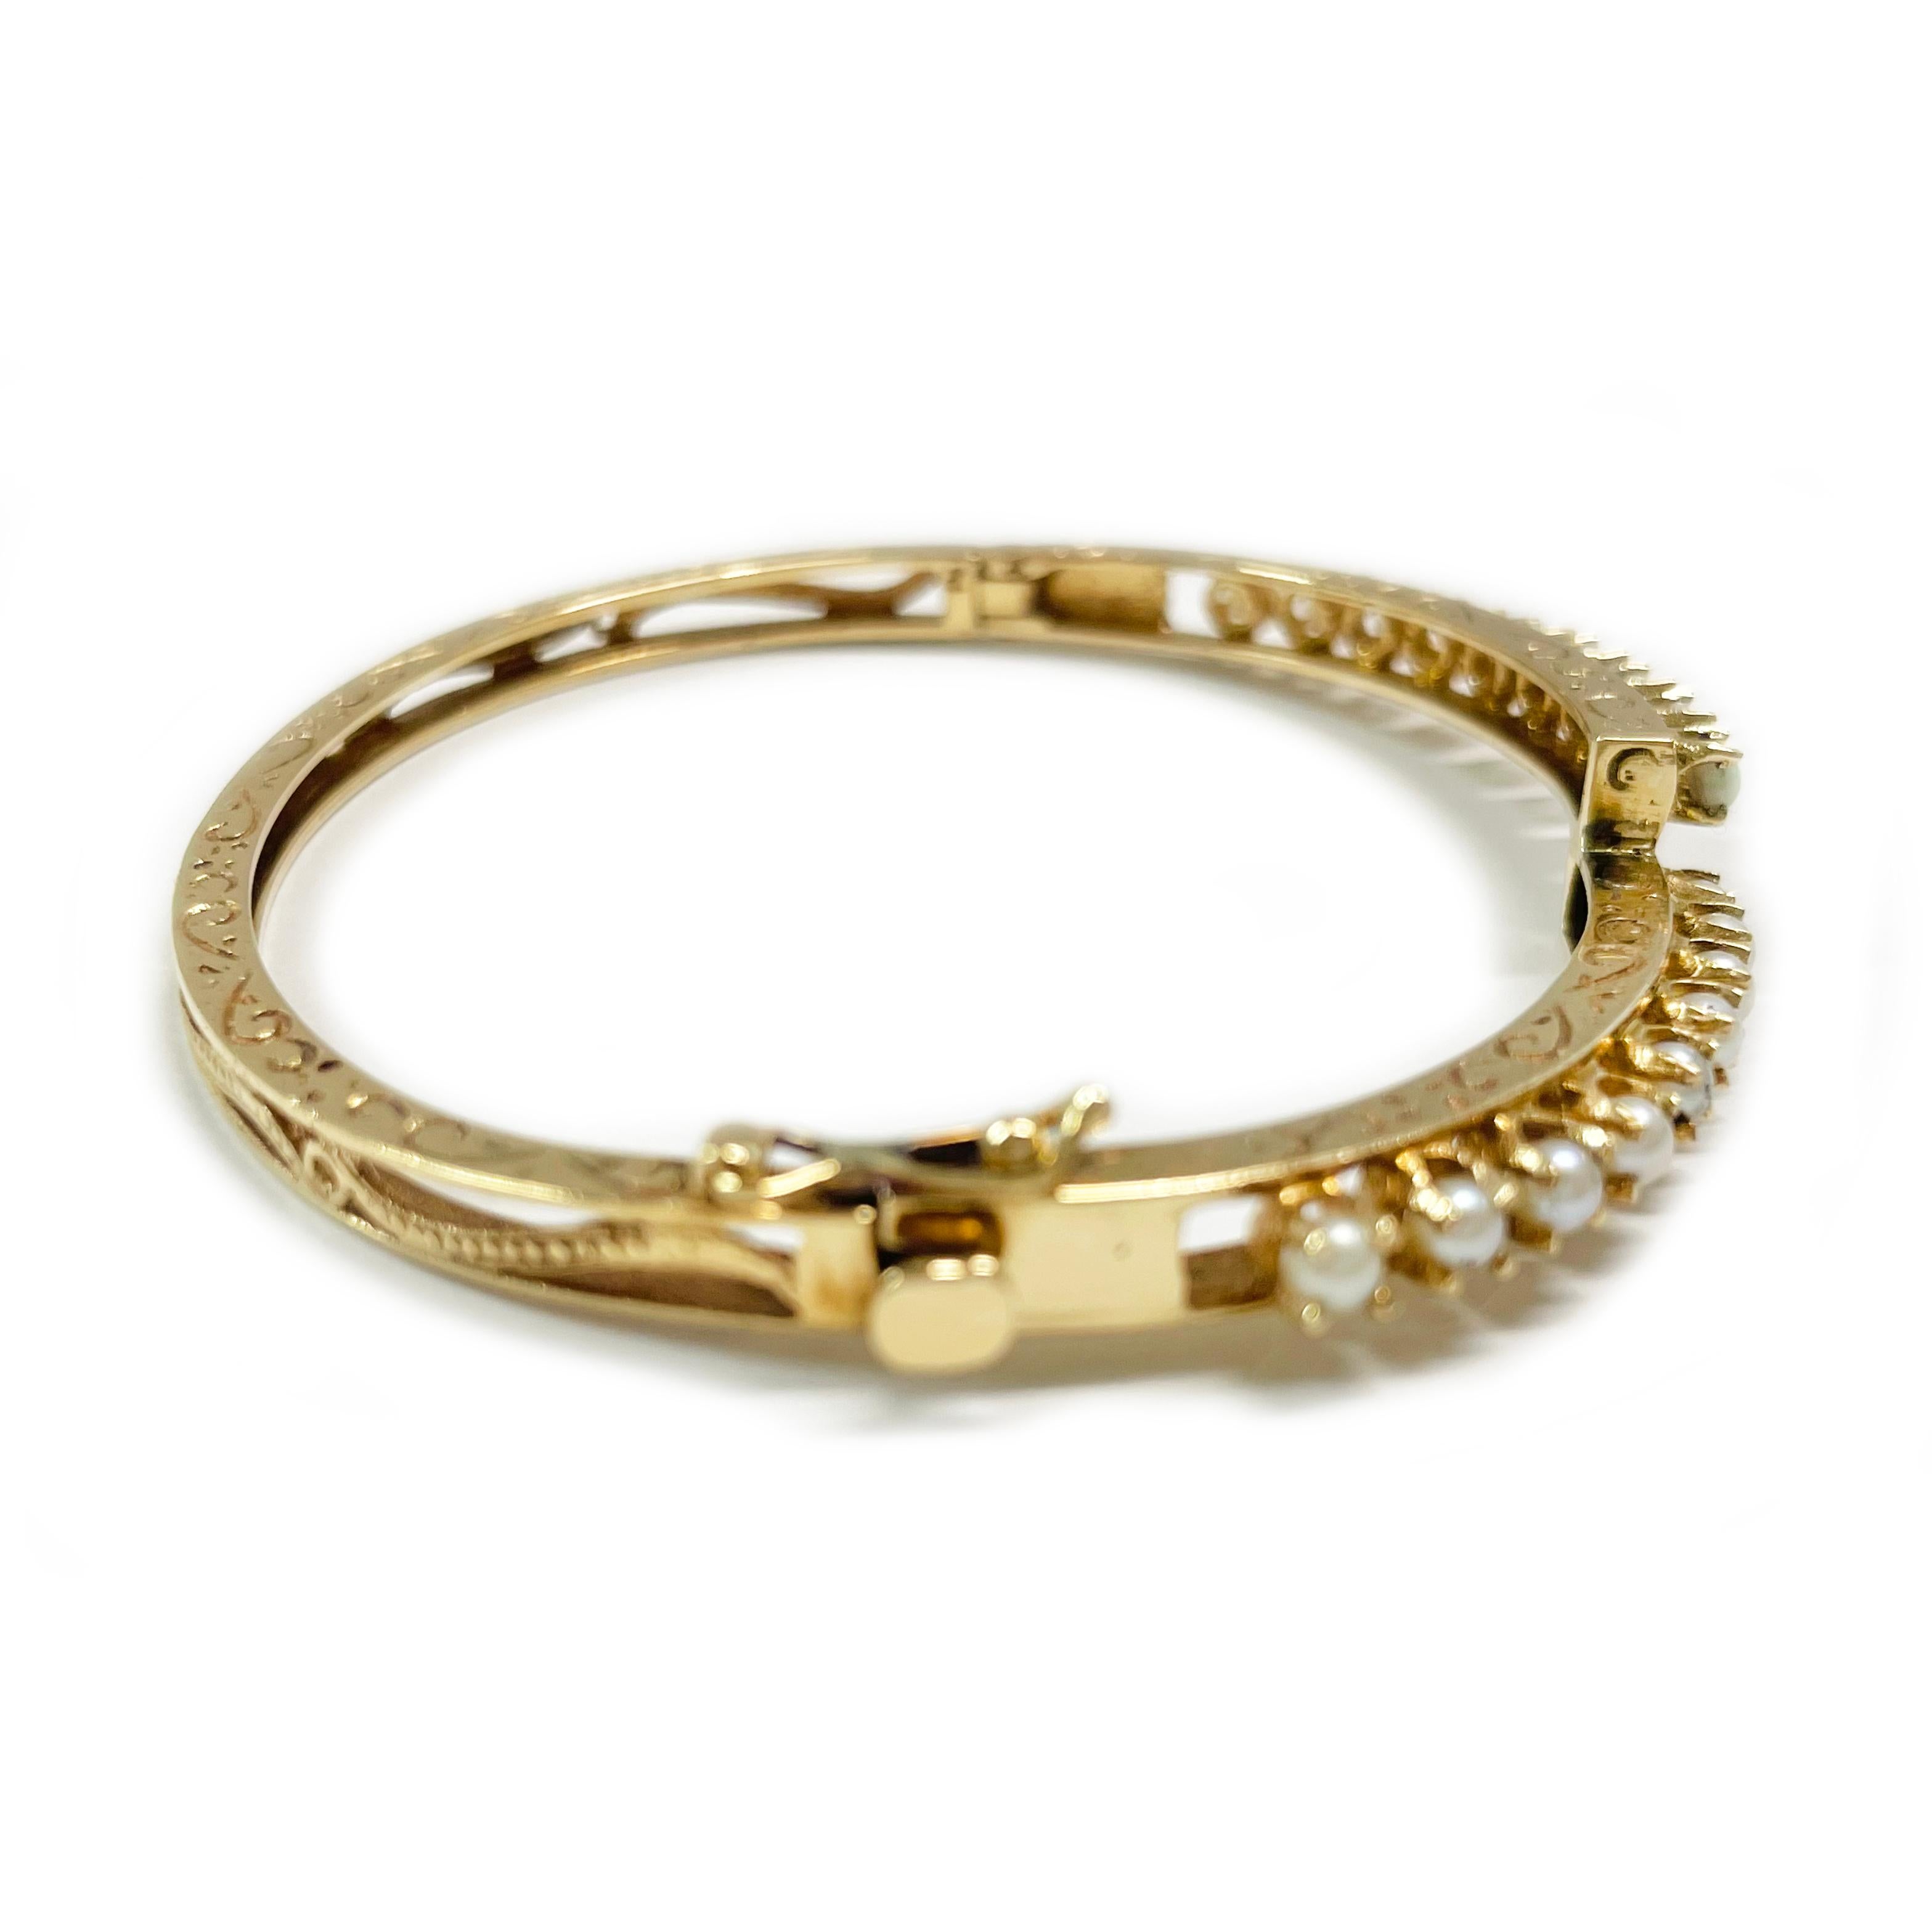 14 Karat Gelbgold Opal Perle Scharnier Armreif Armband. Der Armreif aus den 1950er Jahren ist mit neun Perlen und neun Opalen in Bypass-Fassung besetzt. Die Perlen und Opale sind 3,1 mm groß. Das Armband hat ein Scharnier, einen Kastenverschluss mit